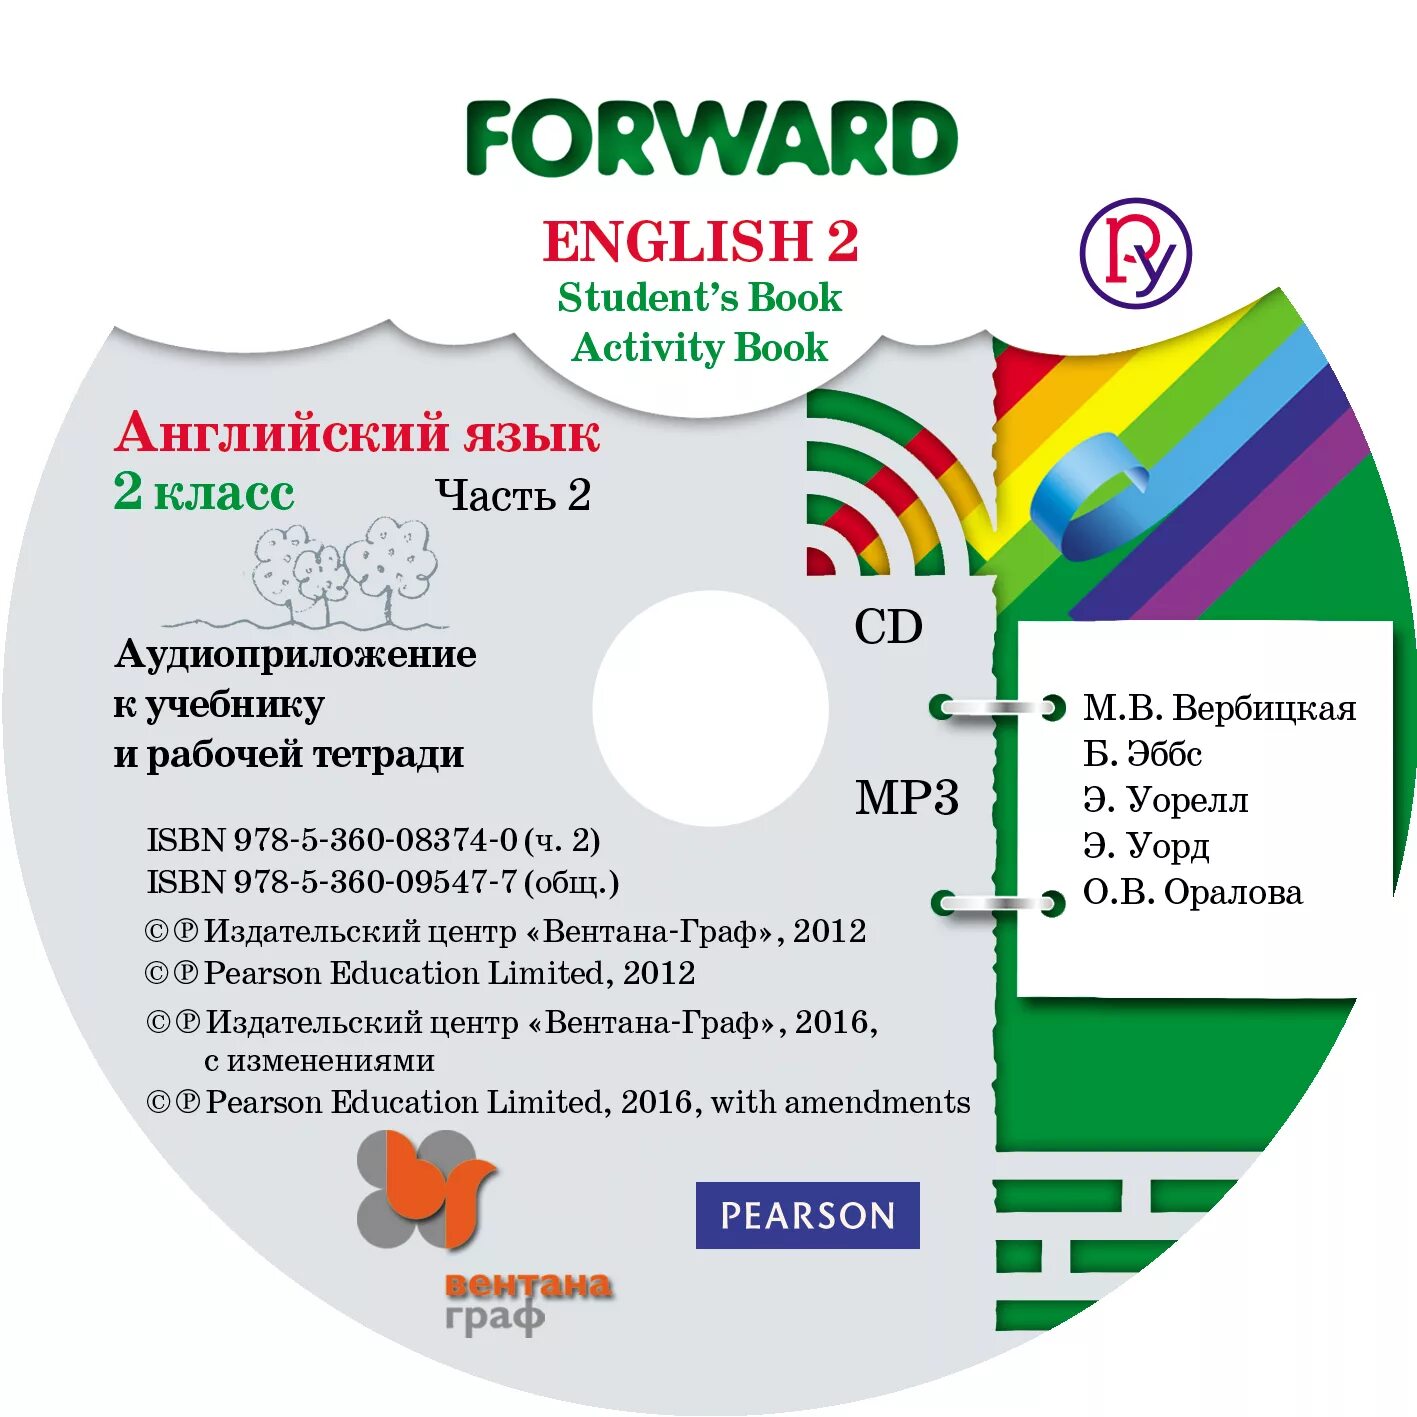 Аудиоприложение английский язык 6 класс 2 часть. Аудиоприложение к учебнику английского языка 2 класс. Аудиоприложение к учебнику английского языка 2 класс форвард 2. Английский форвард 2 класс. Forward English 2 класс.